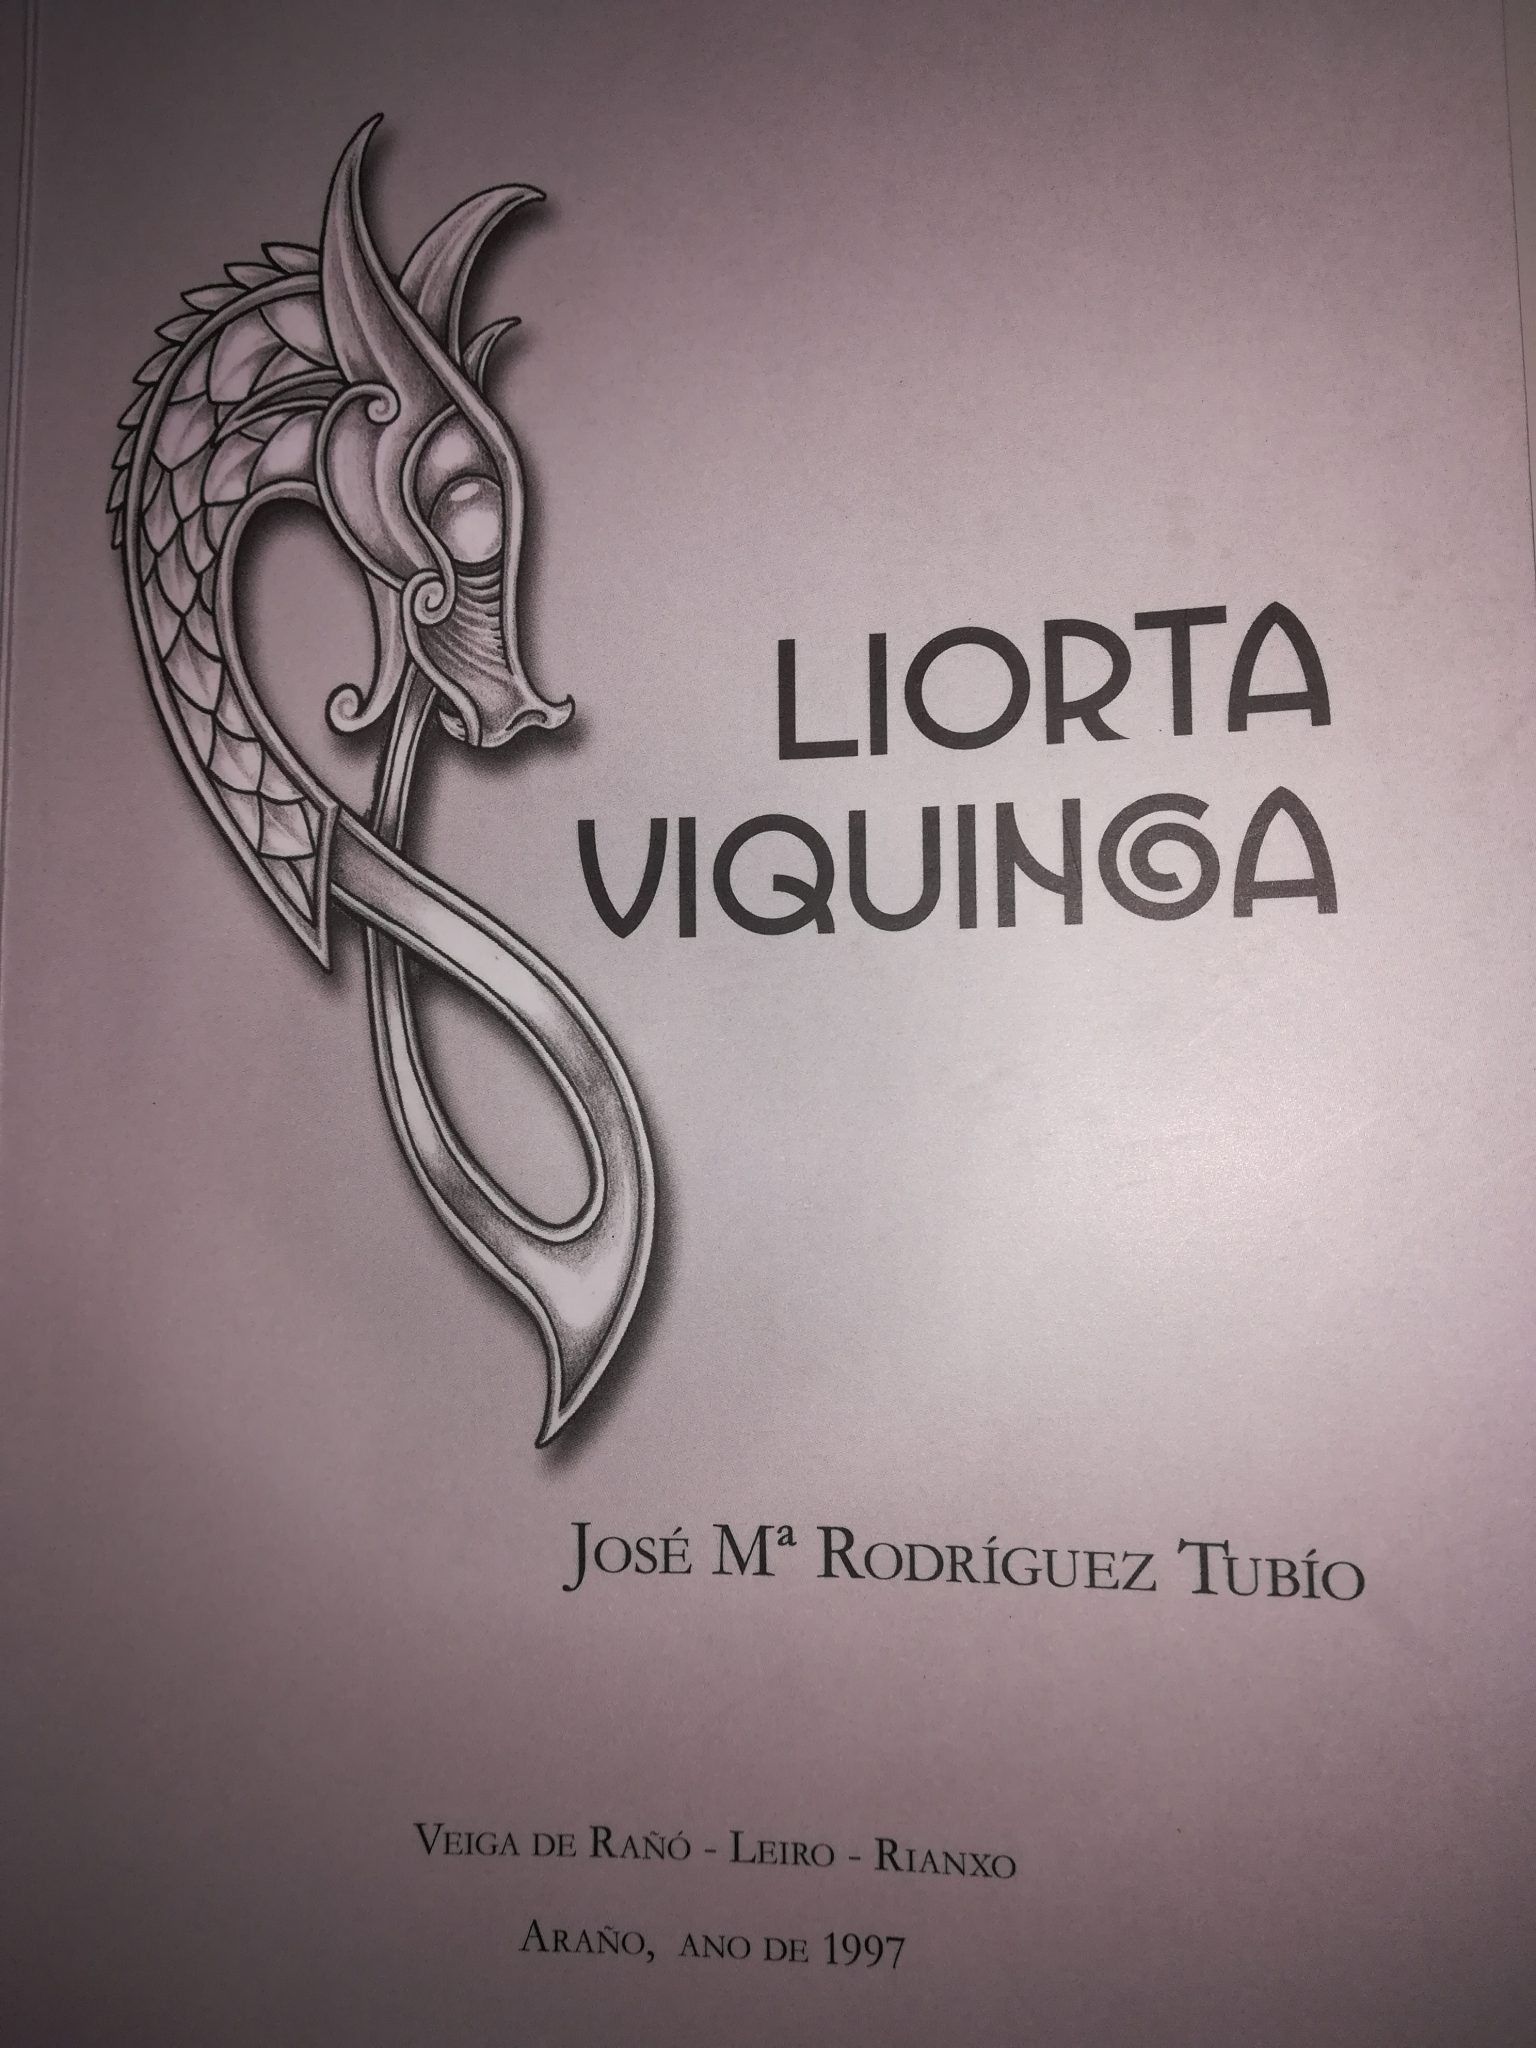 Liorta Viquinga Book Cover